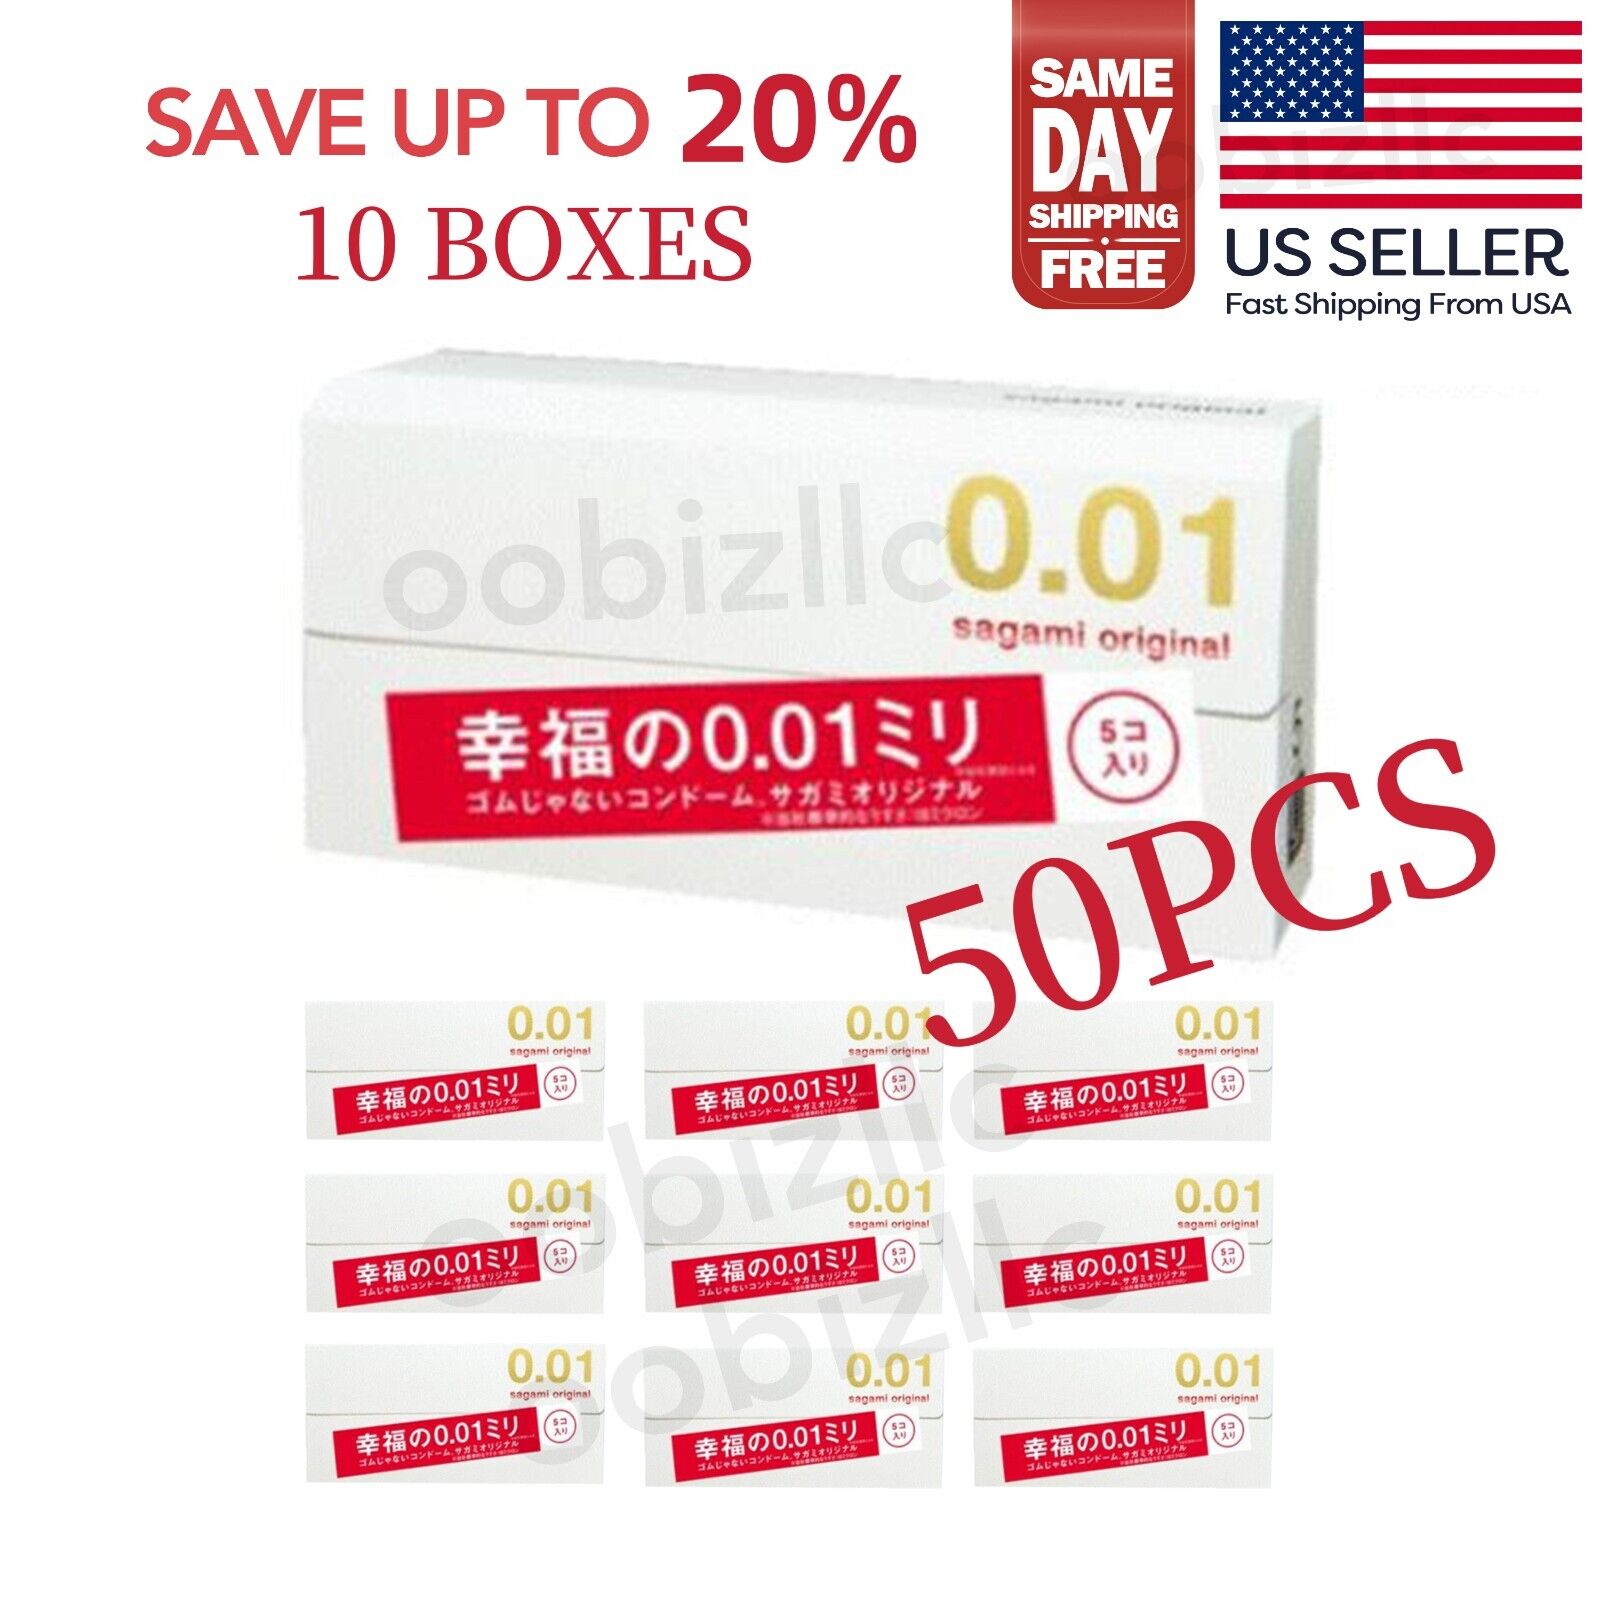 Sagami Original 001 5pcs Ultra Thin Condom 0.01 mm (10 BOXES) - US Seller